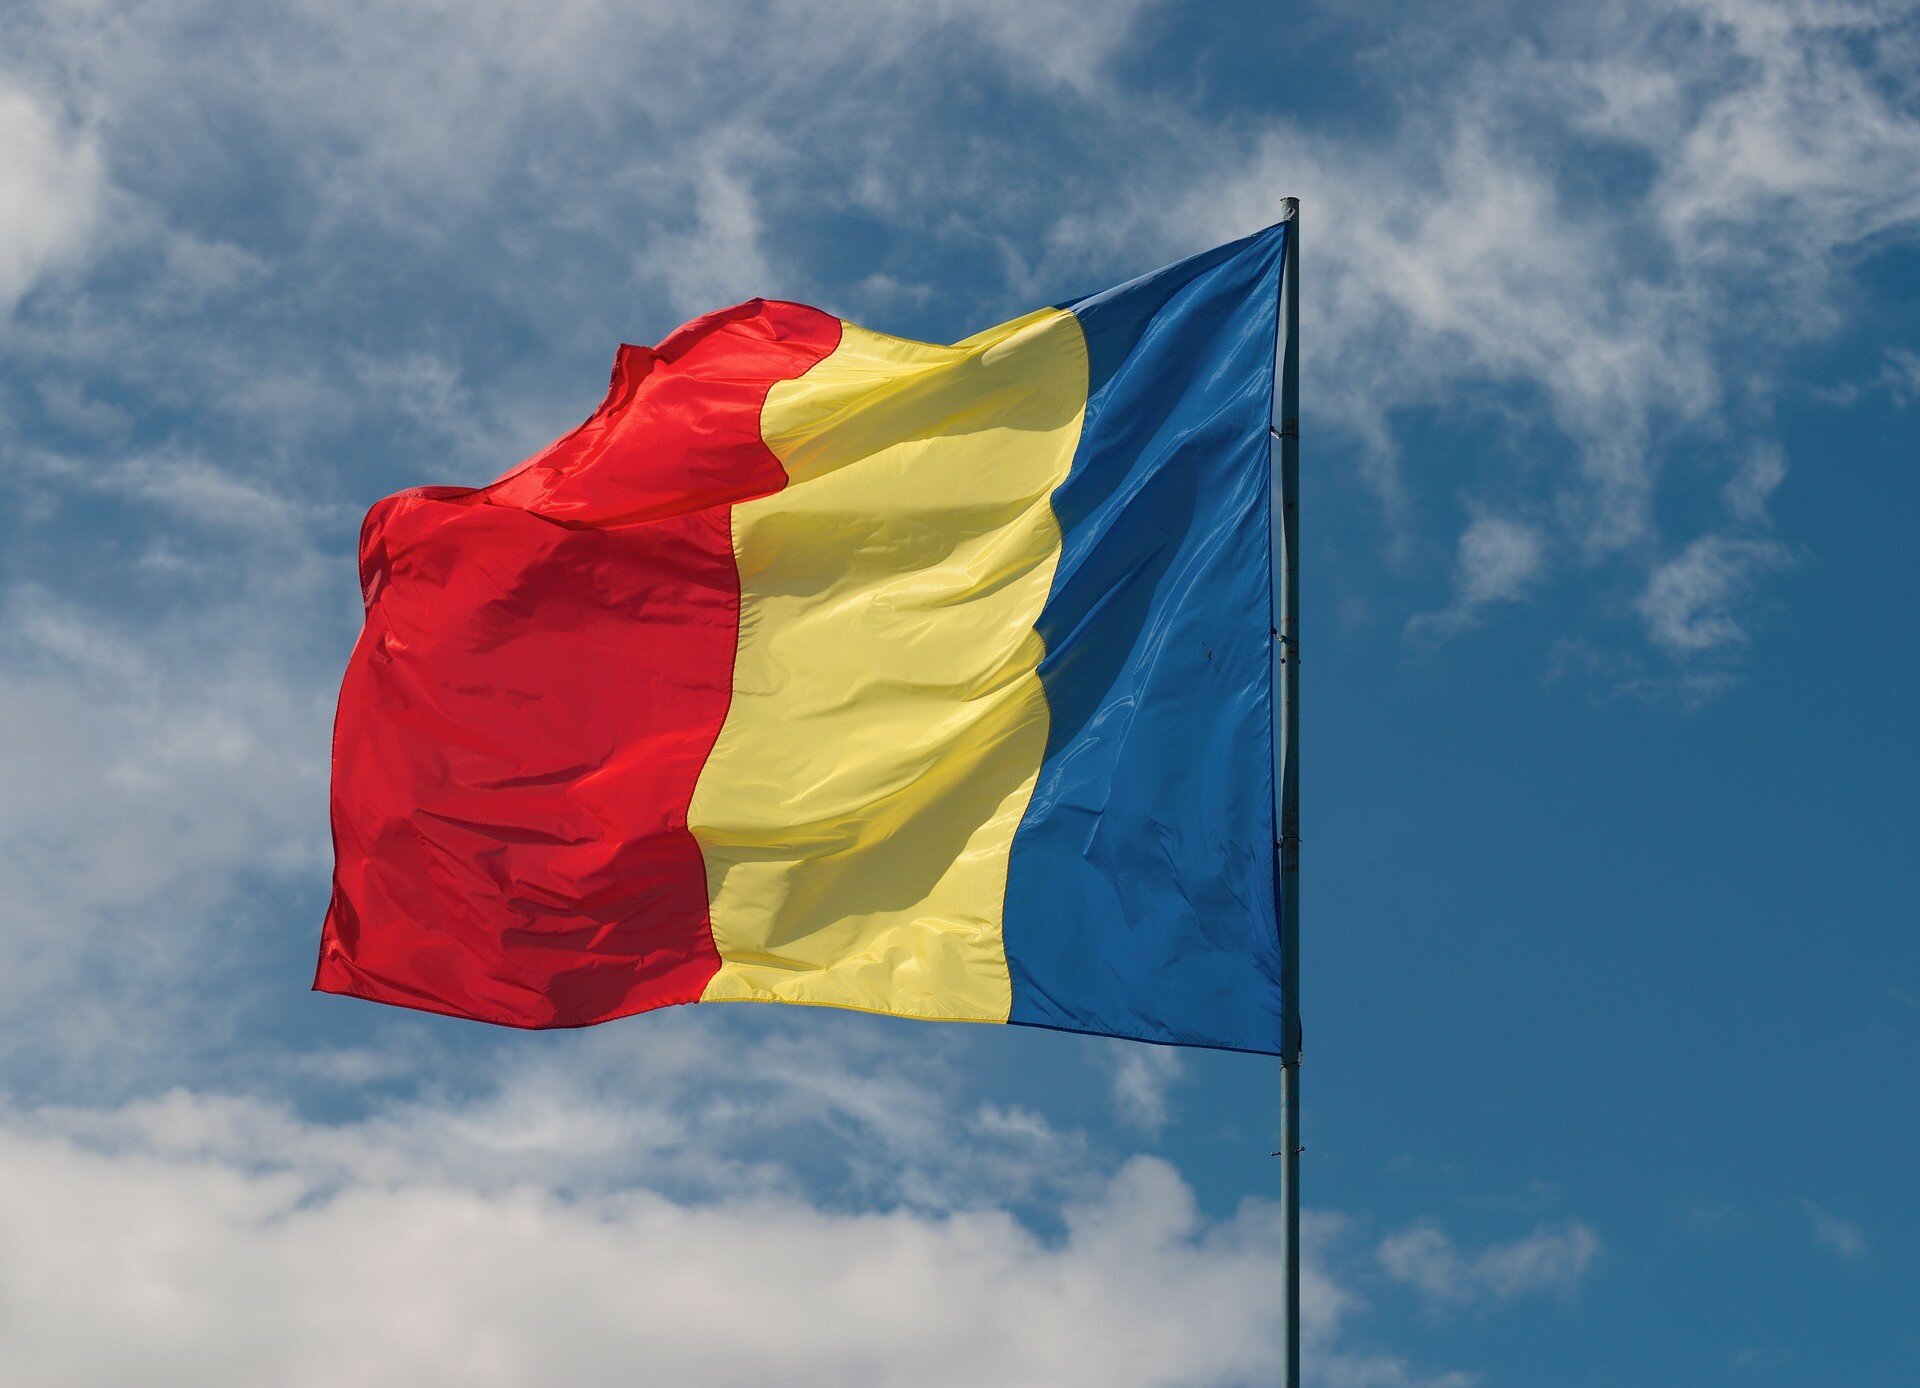 Румынская диаспора попытается вернуть свой язык в школы через суд